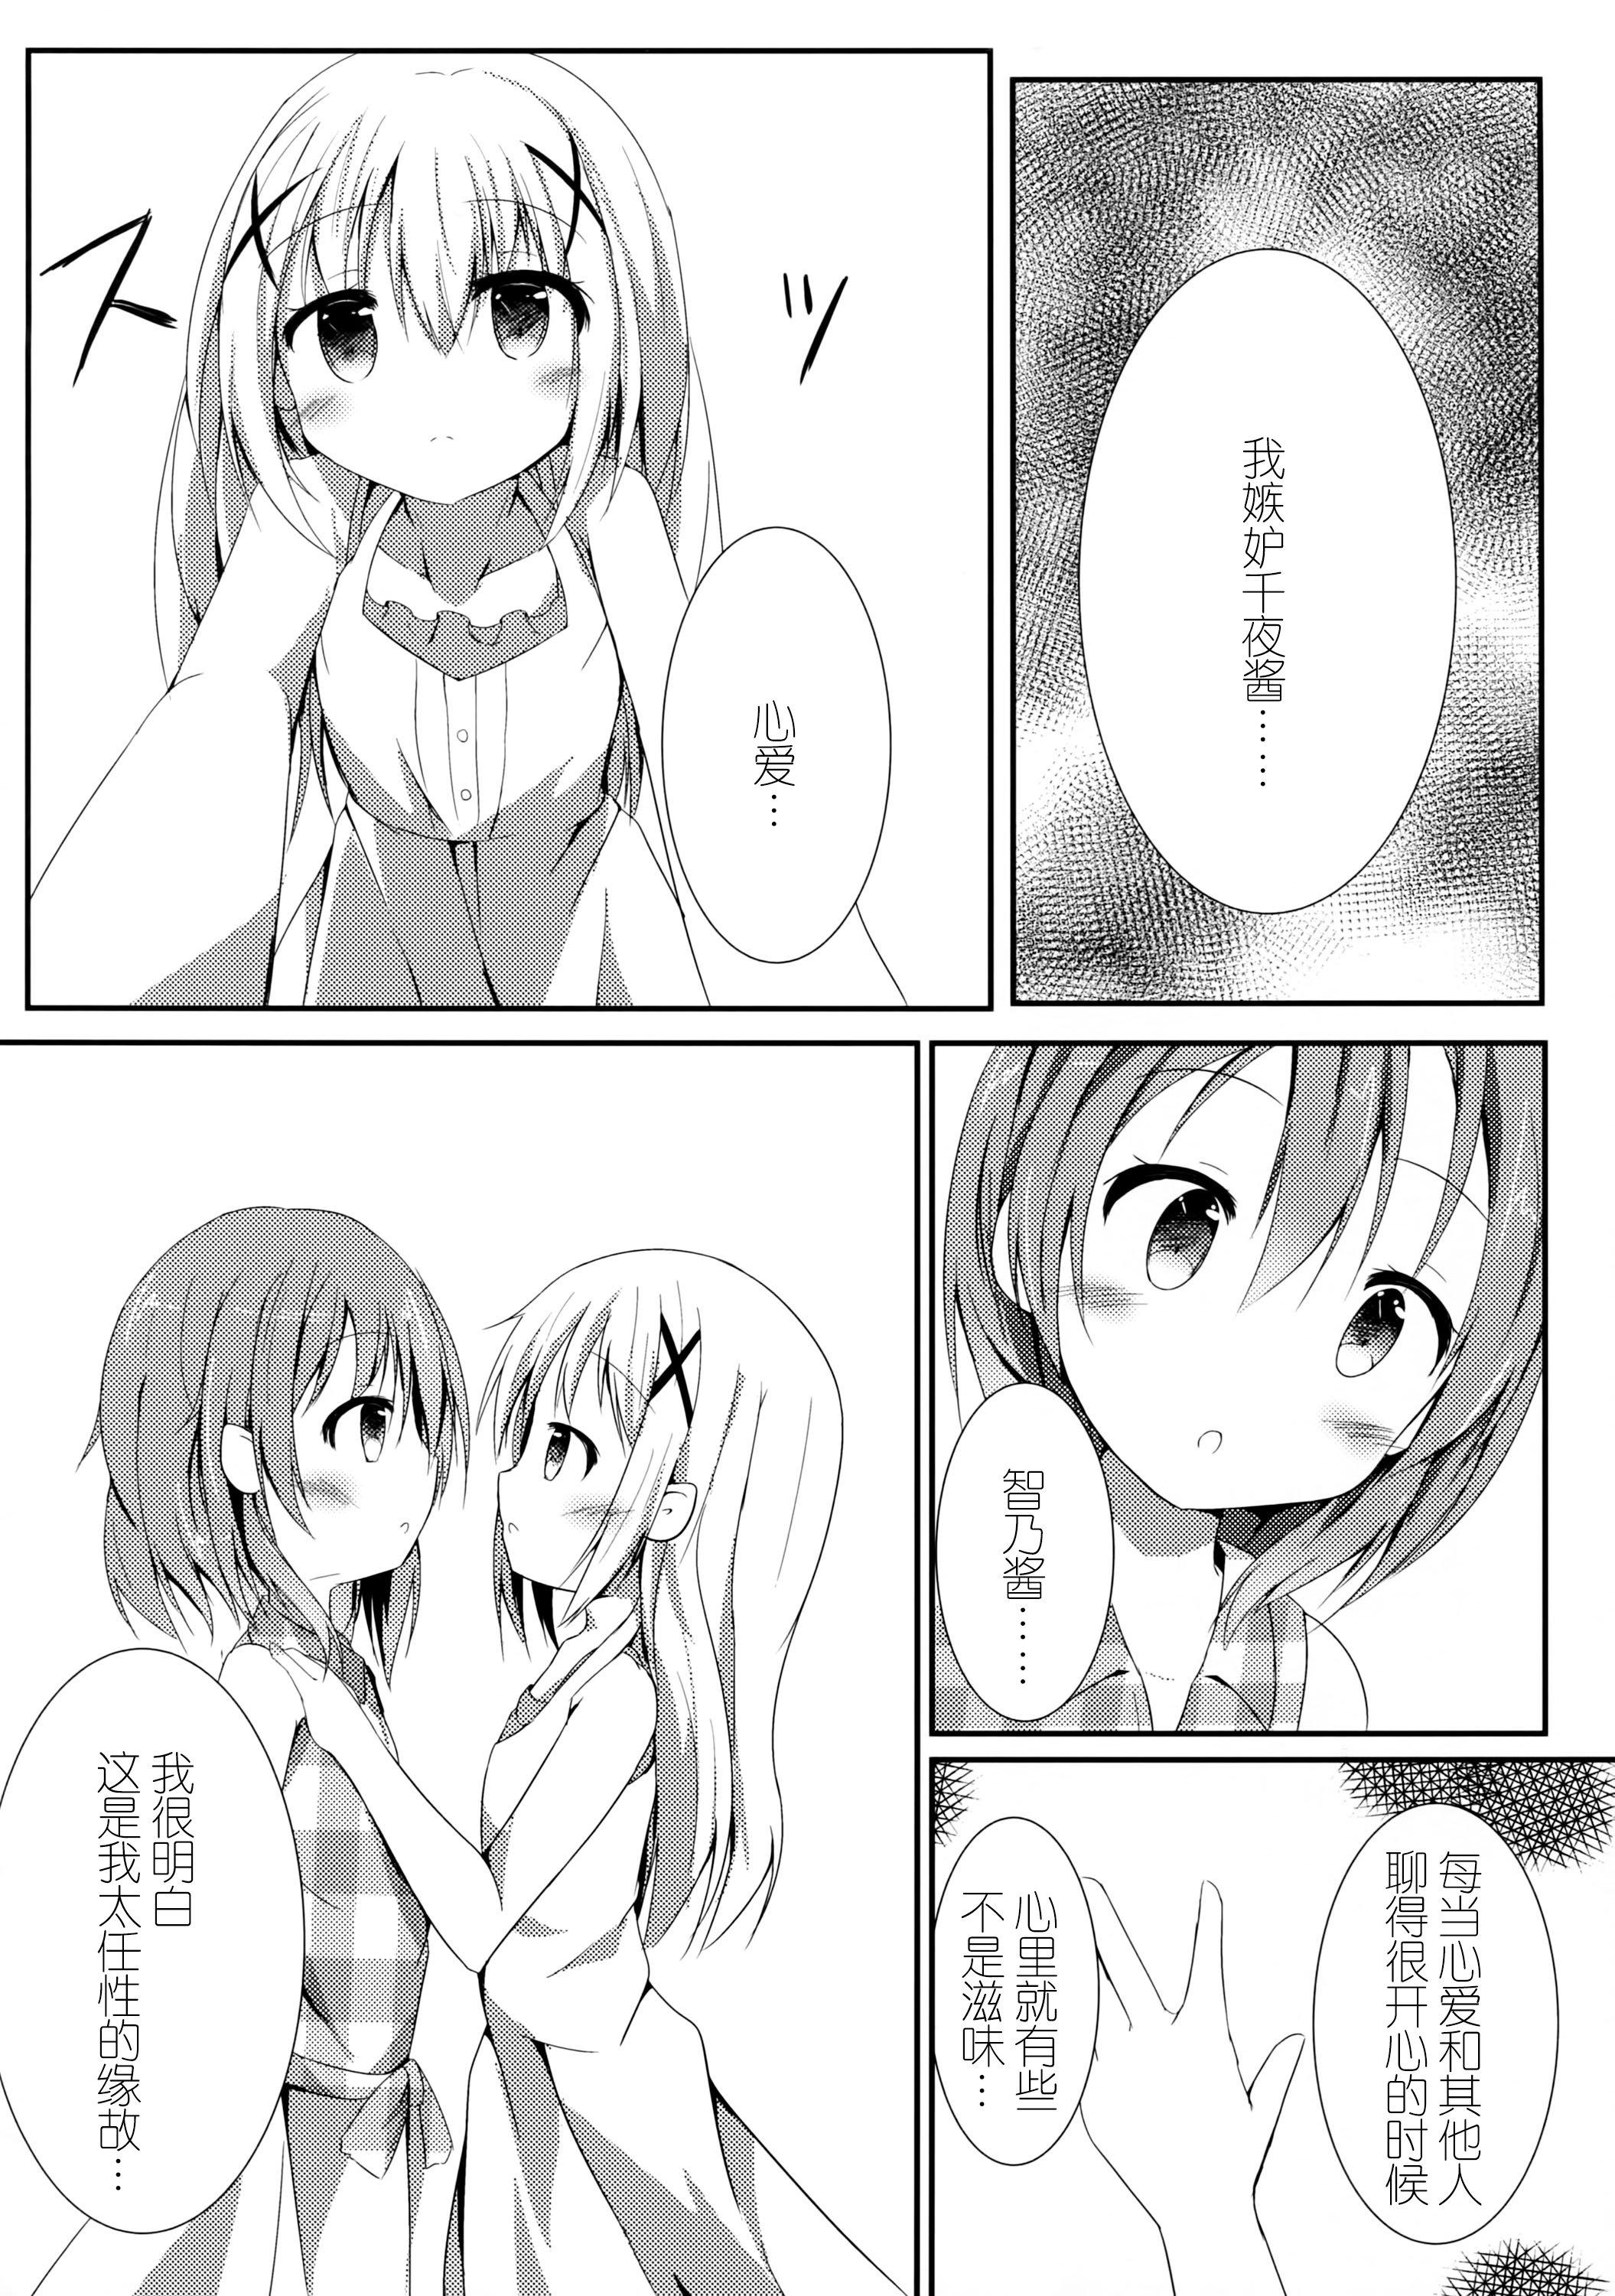 European Sister or Not Sister?? - Gochuumon wa usagi desu ka Sexy Girl - Page 6